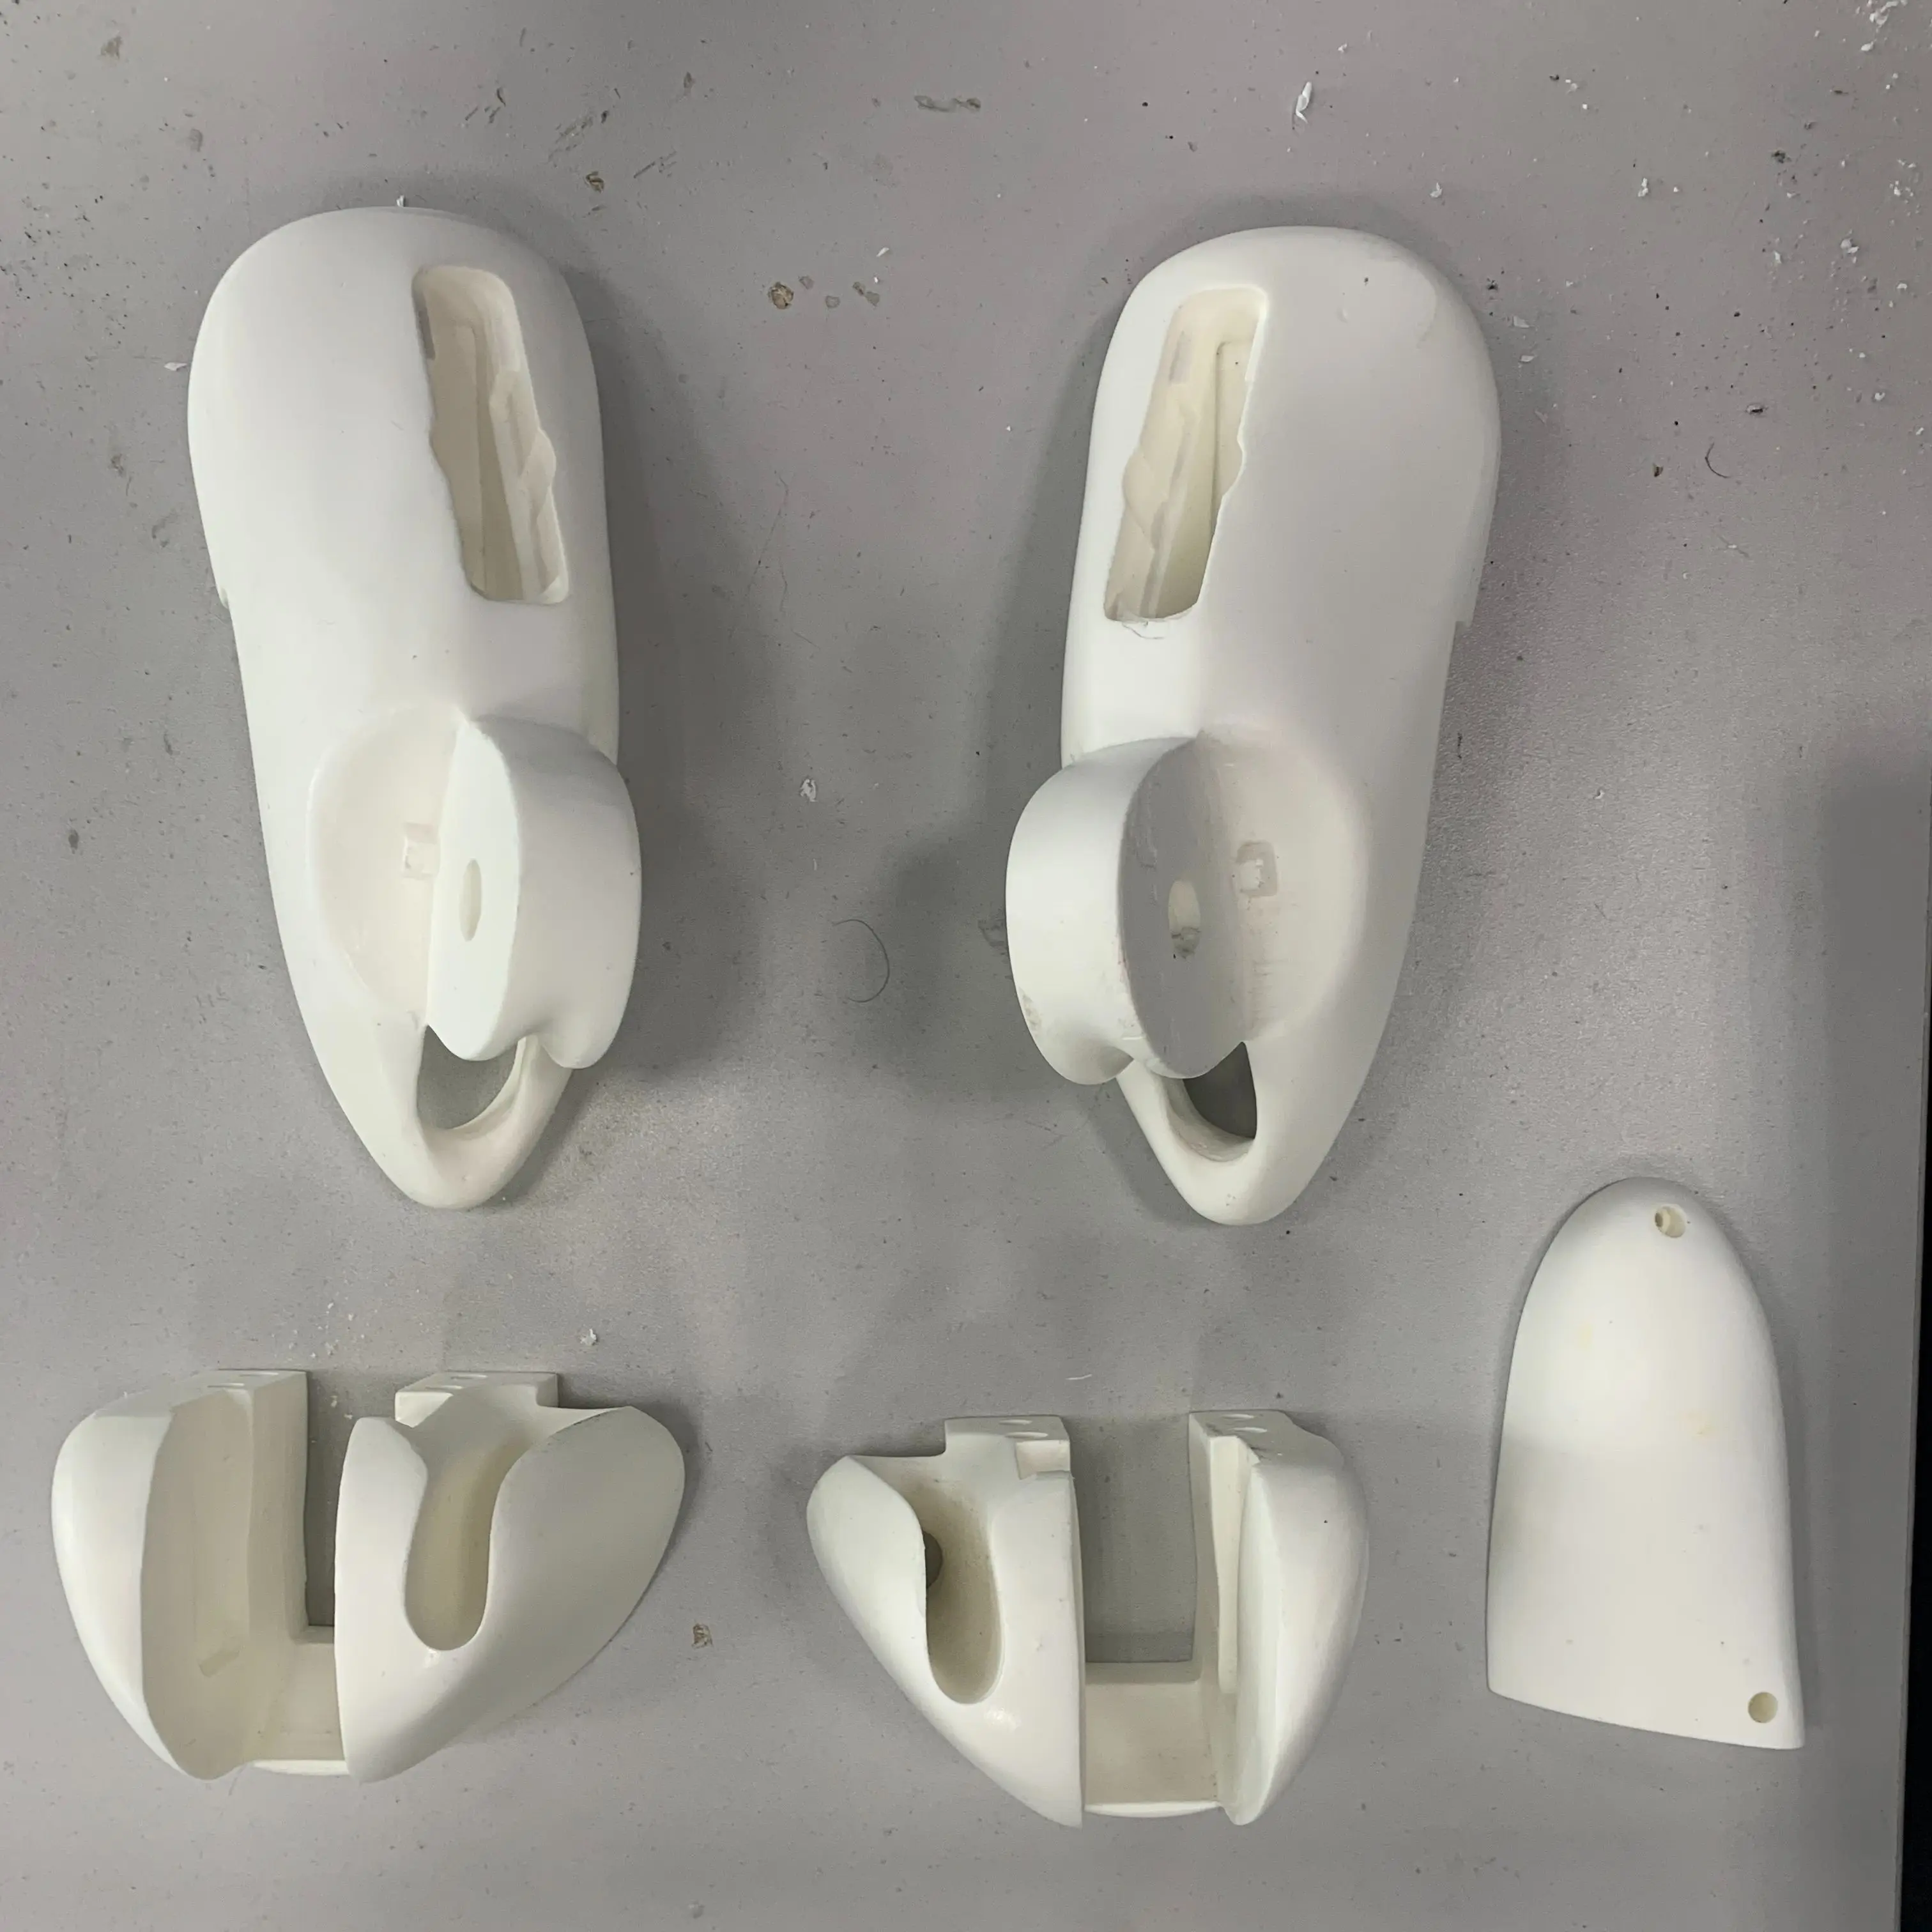 Customized Plastic Robot Arm Prototypes